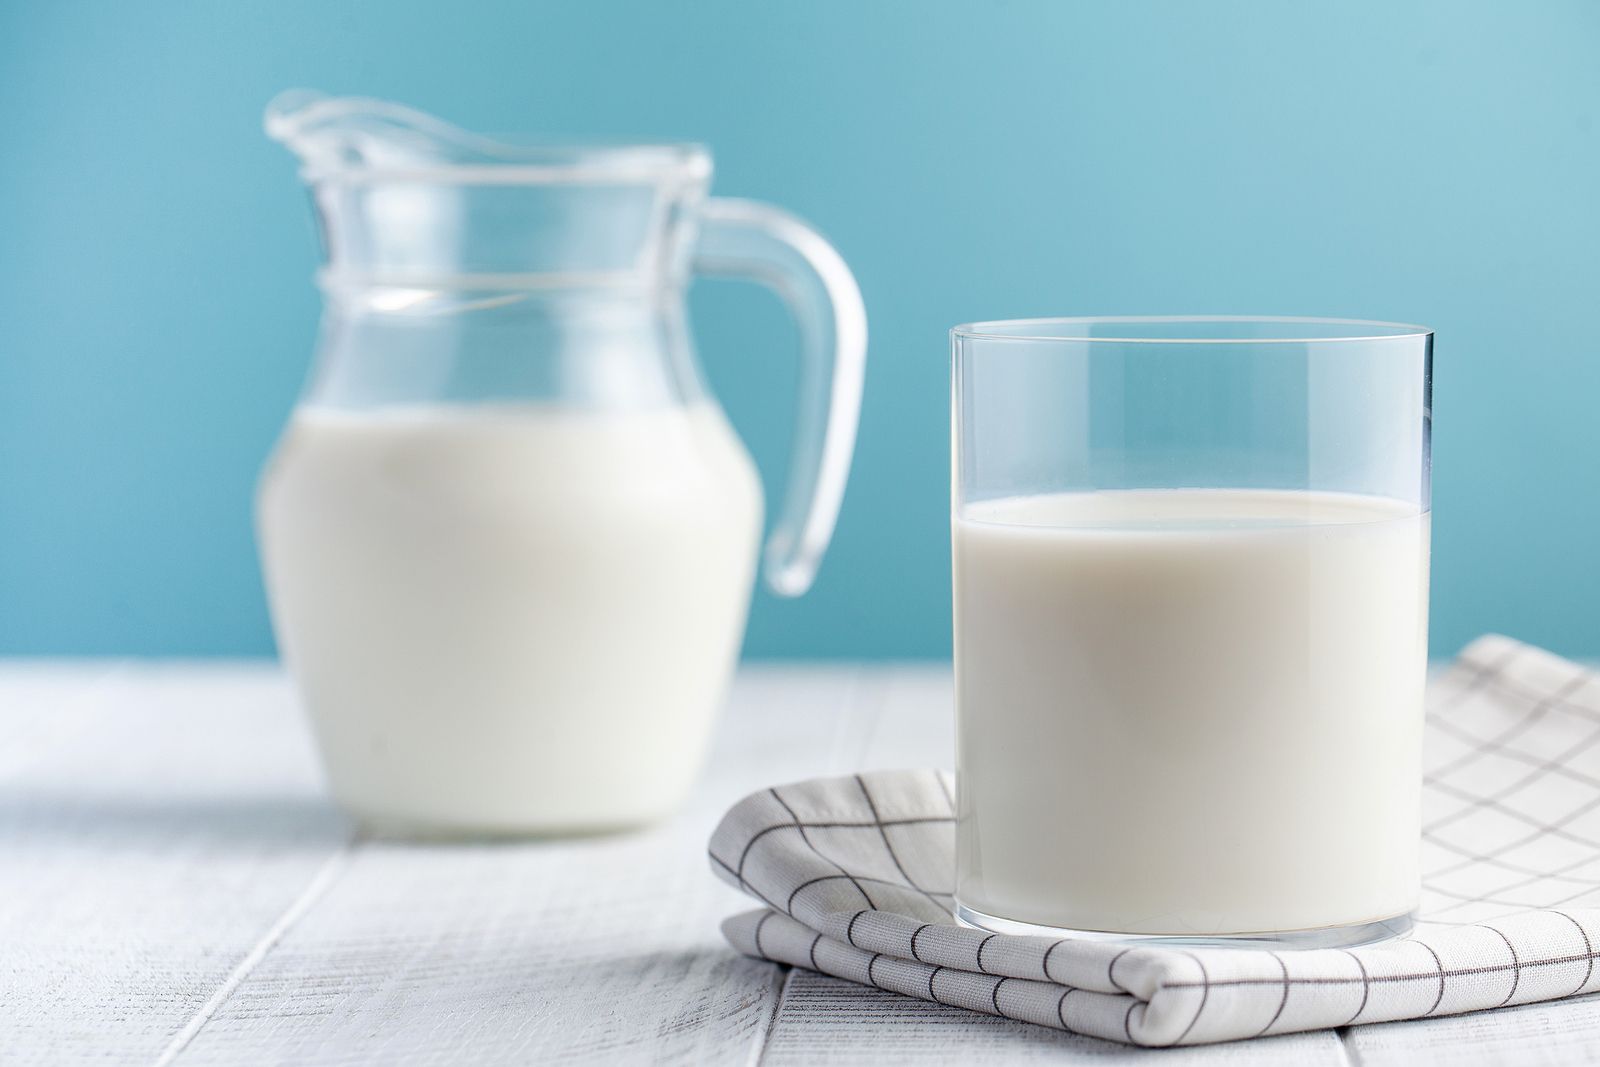 Beber leche de forma habitual no aumenta los niveles de colesterol, según un estudio. Foto: bigstock